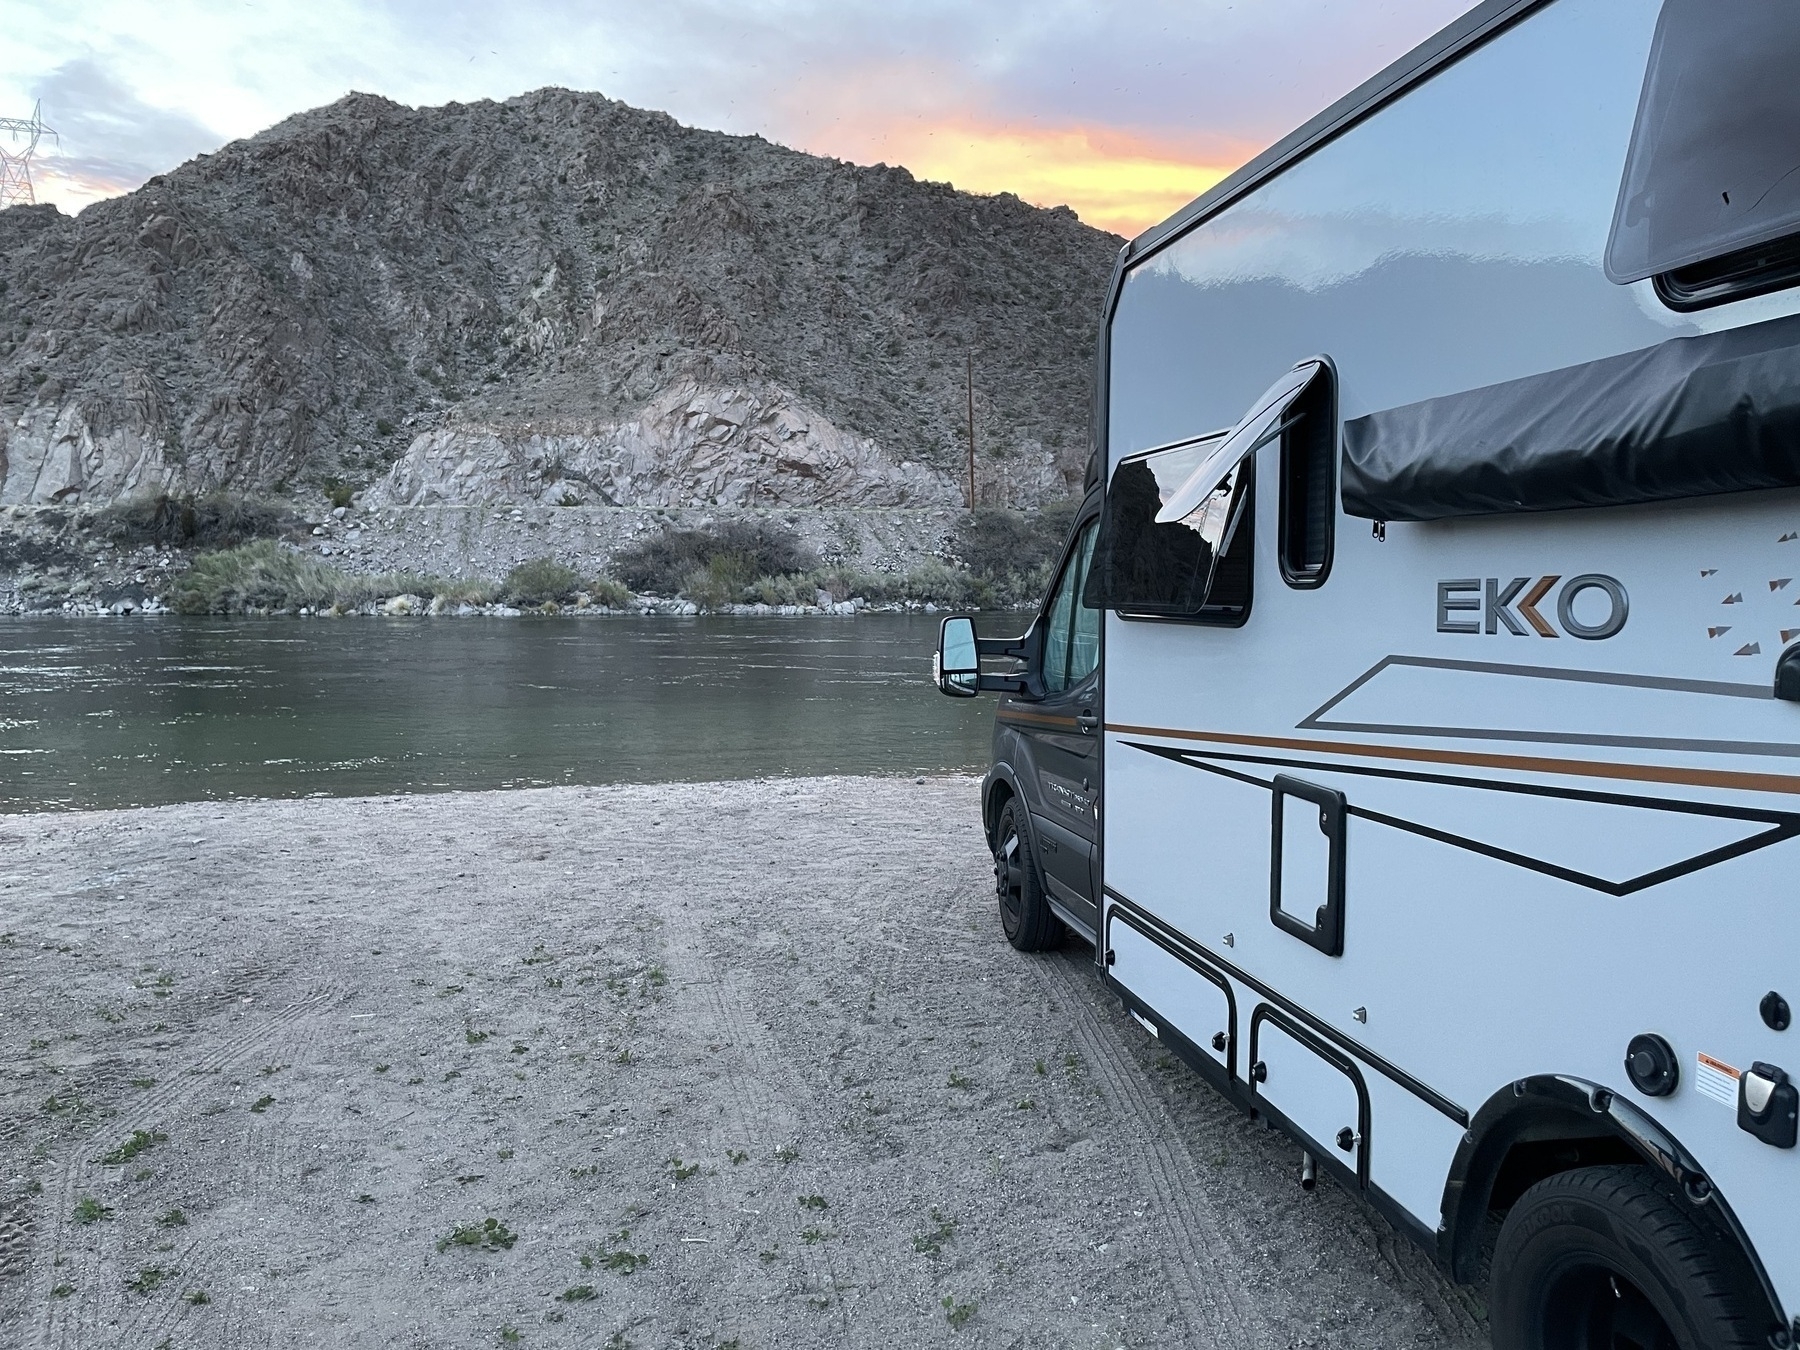 Adventure Van on the Colorado River